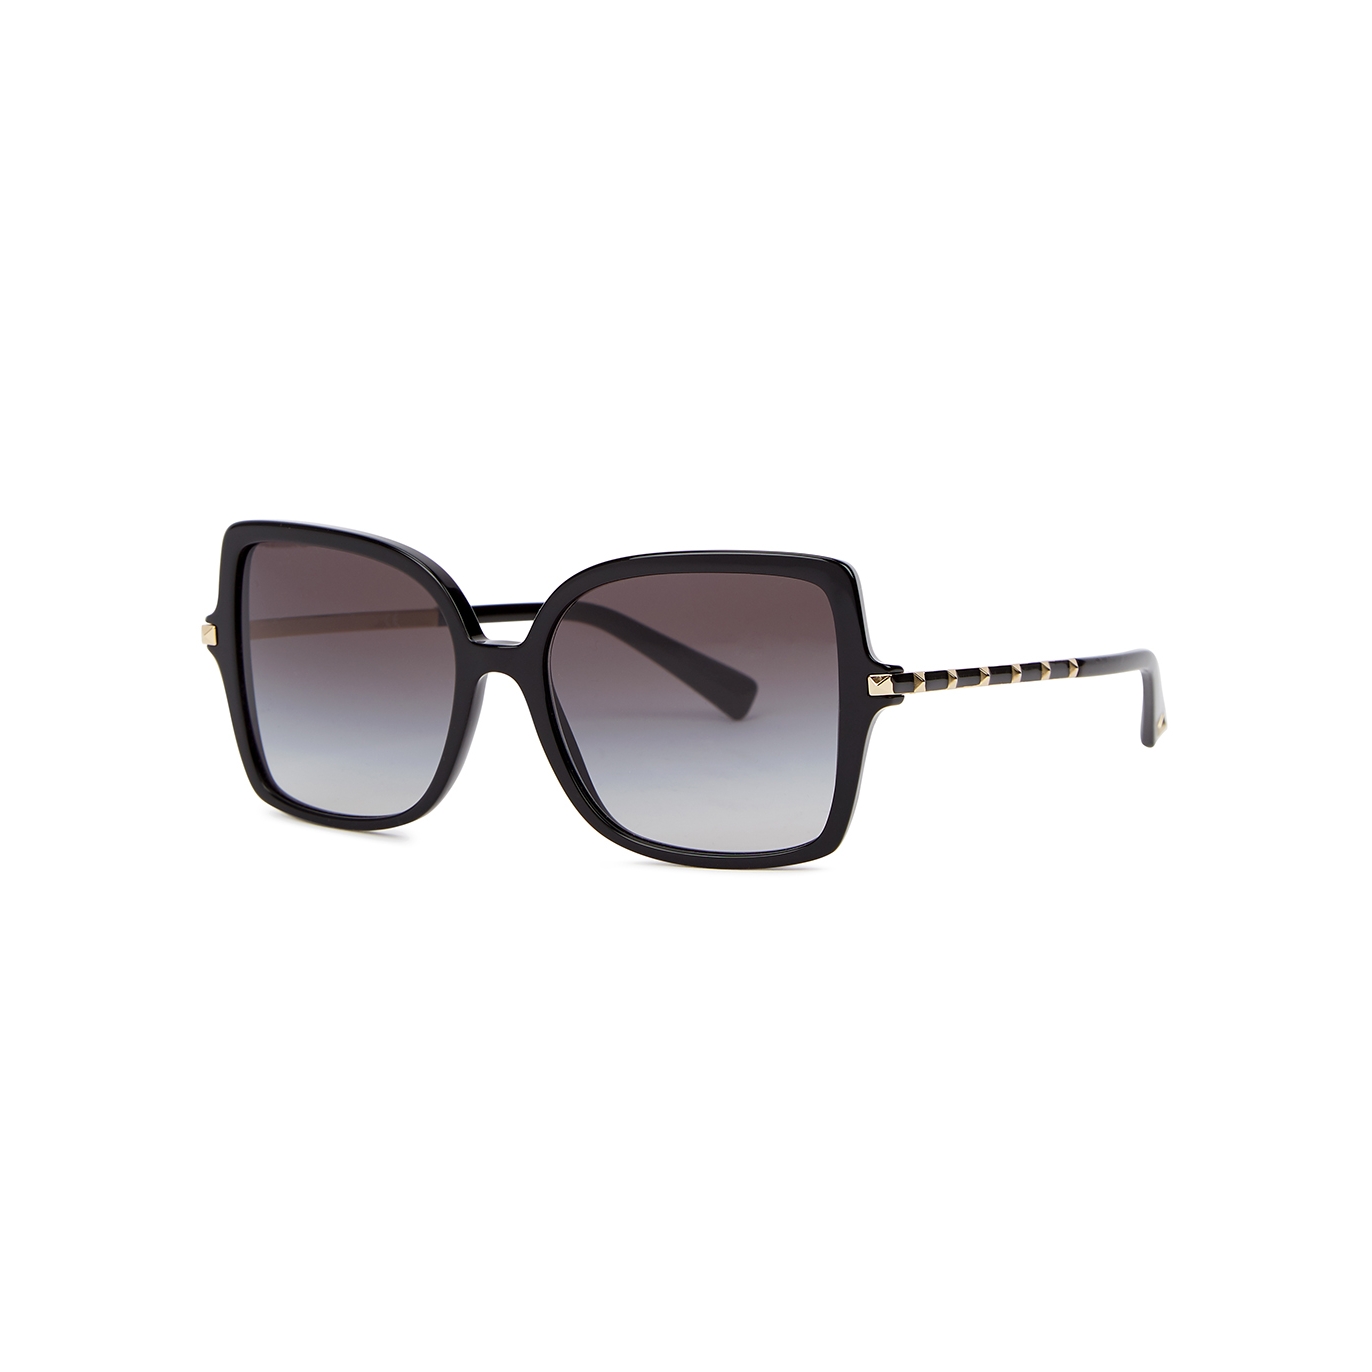 Valentino Valentino Garavani Black Oversized Square-frame Sunglasses